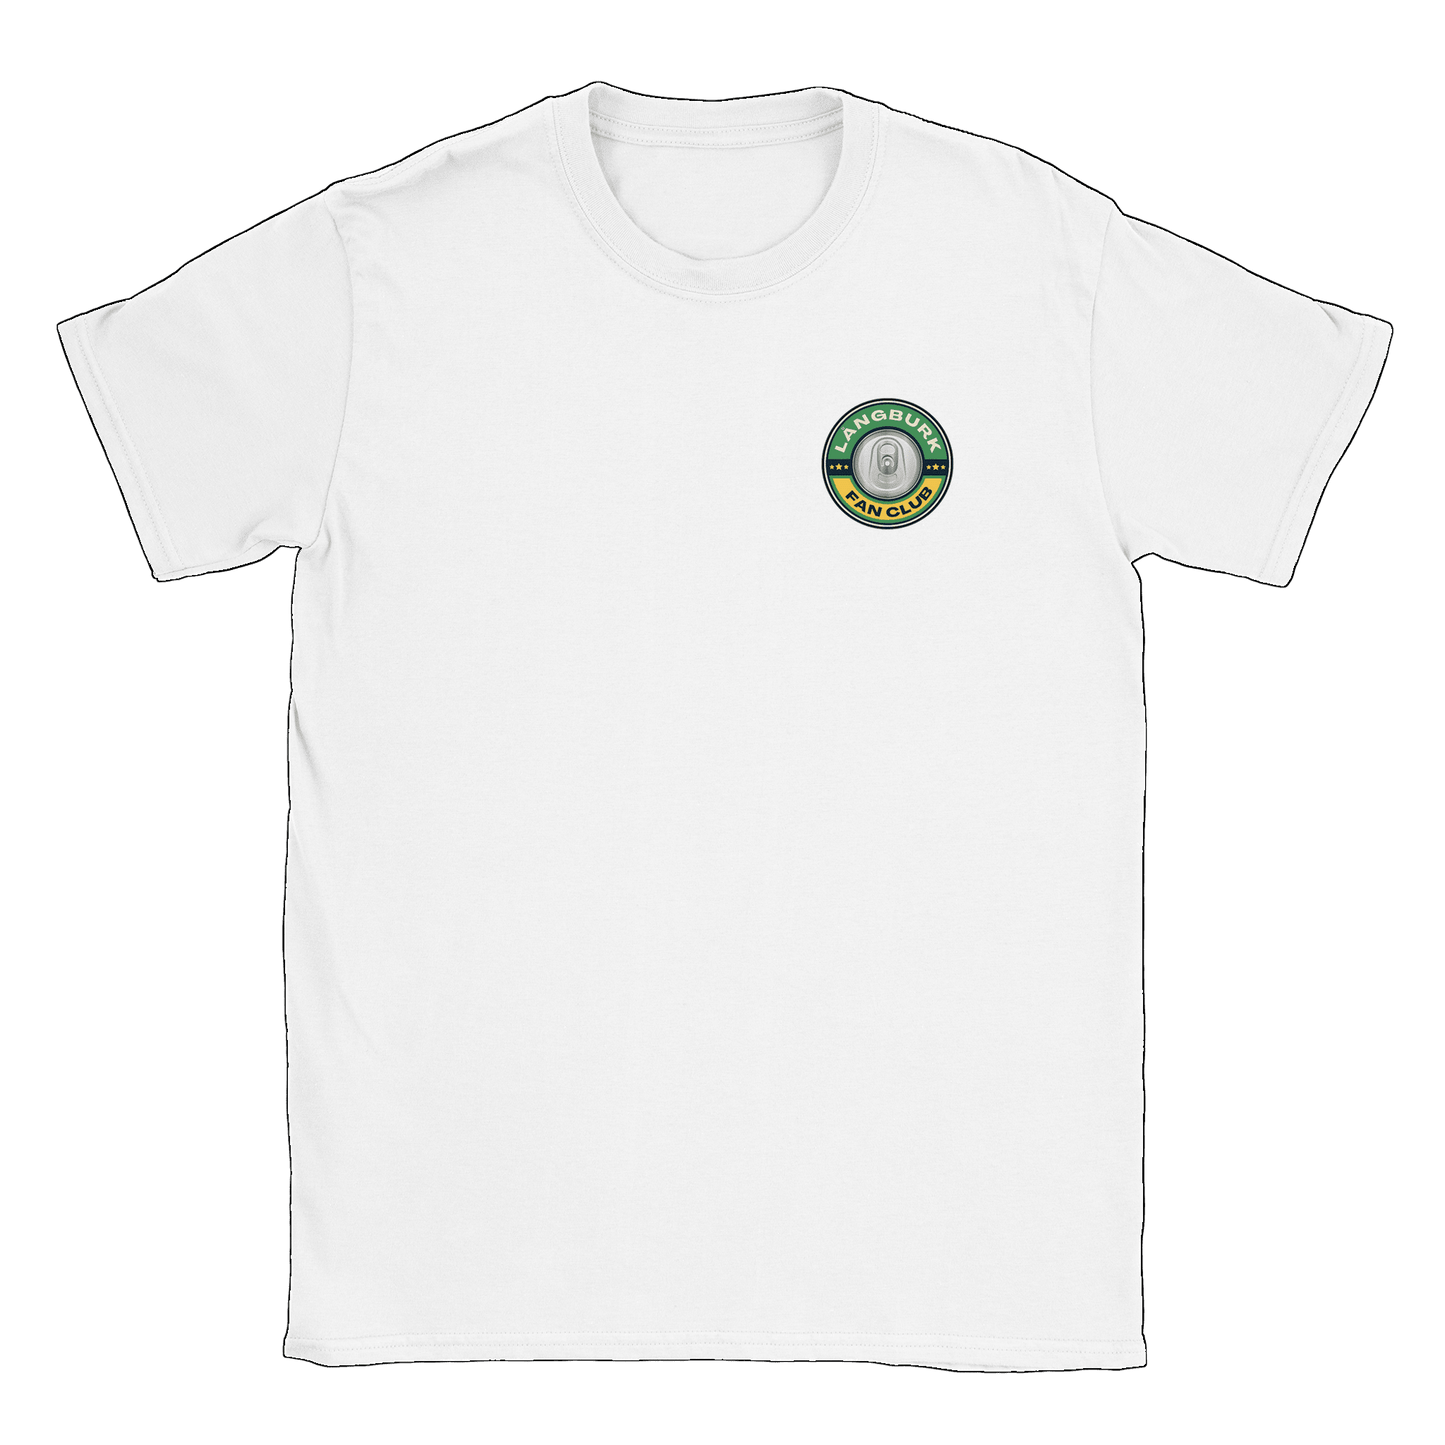 Långburk Fan Club liten - T-shirt Vit